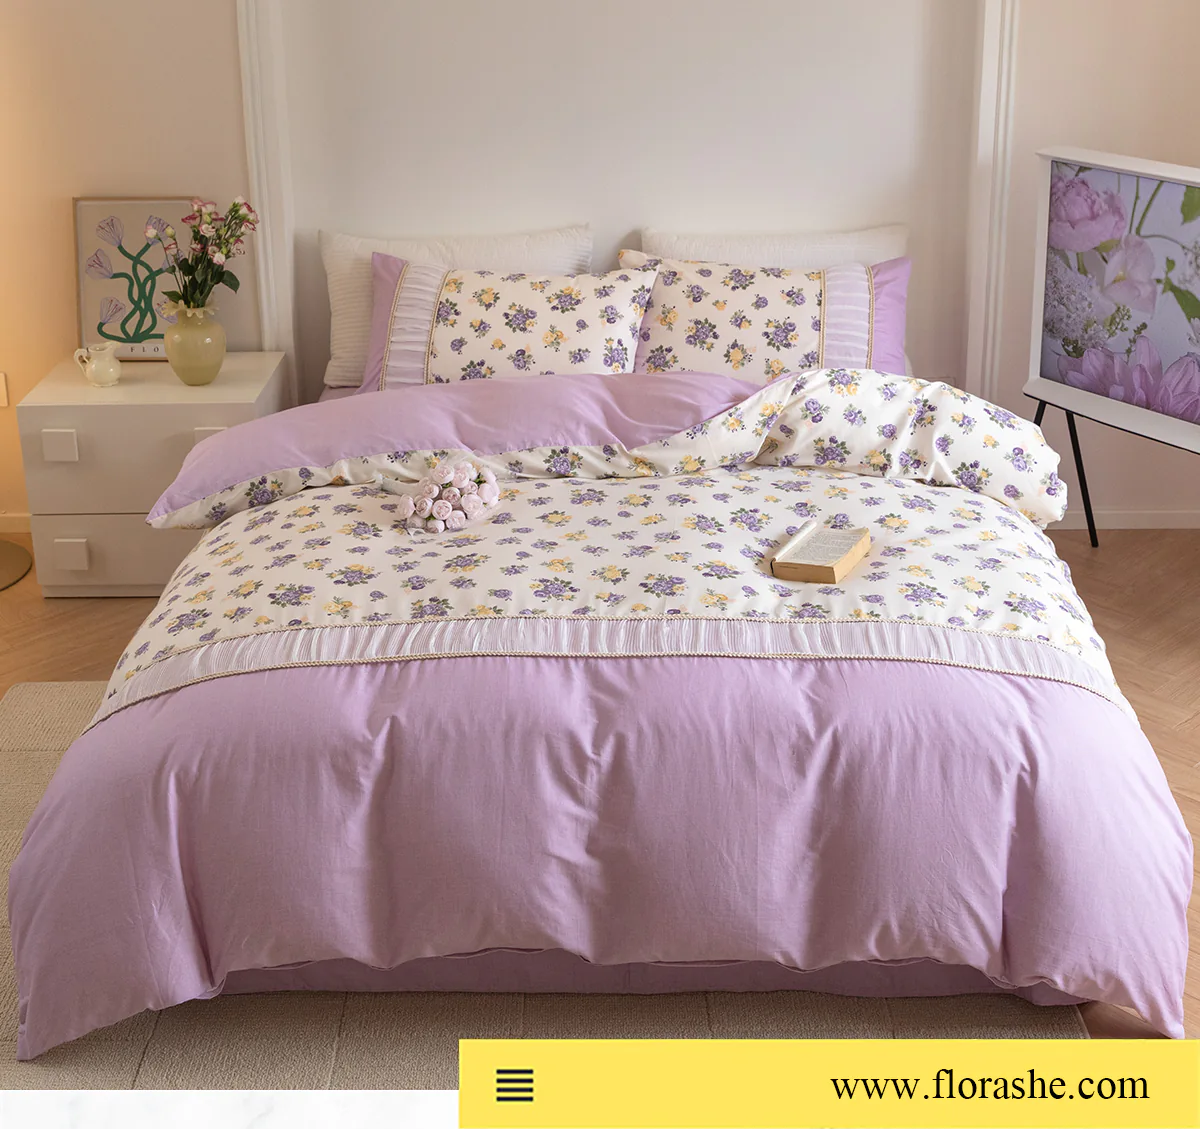 Retro-Princess-Style-100-Cotton-Floral-Duvet-Cover-Bedding-Set25